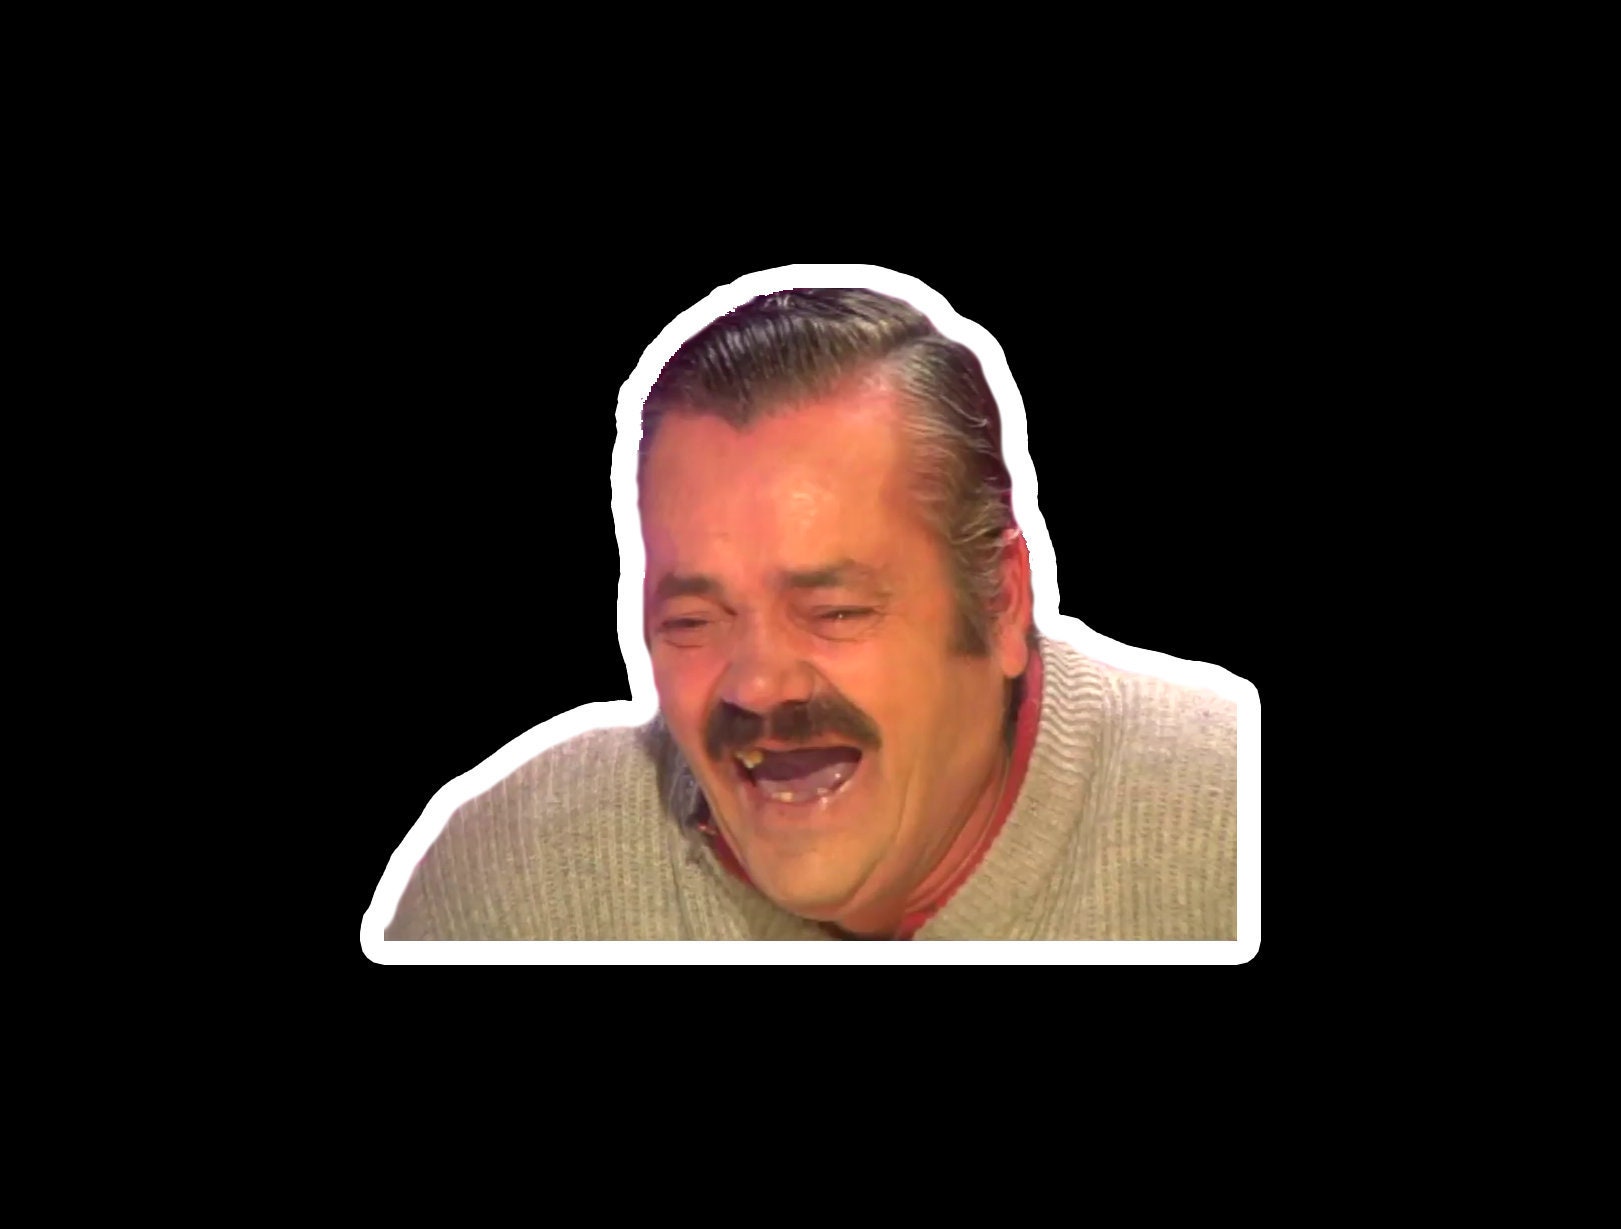 Spanish Laughing Guy Meme KekW Emote Vinyl Sticker or Magnet | Etsy